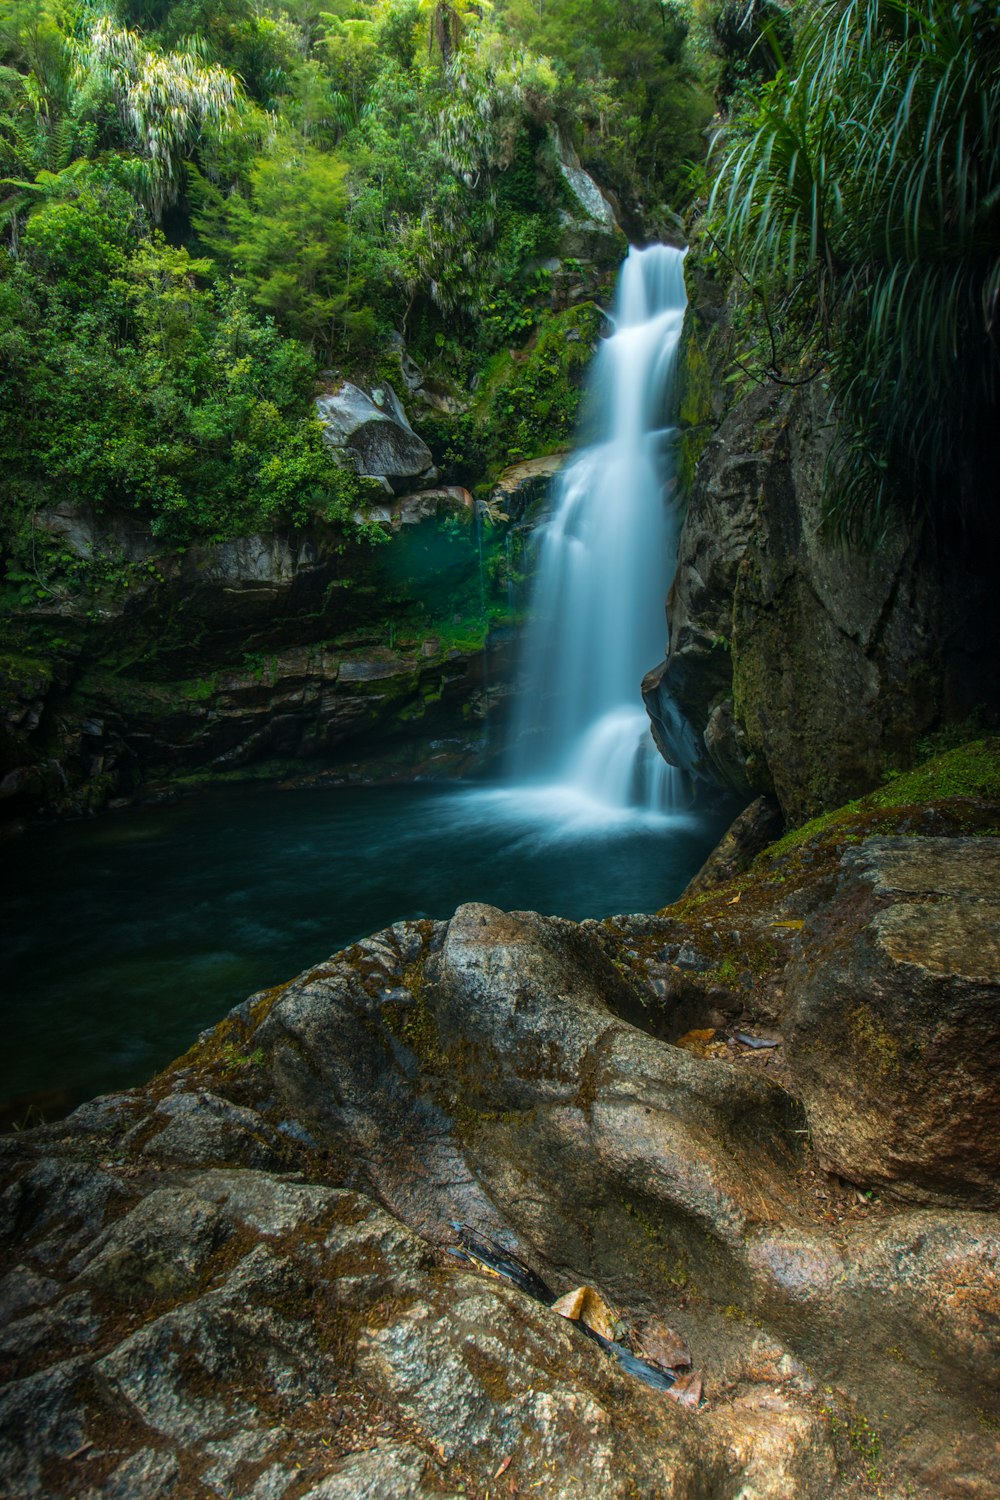 Wasserfälle im Wald